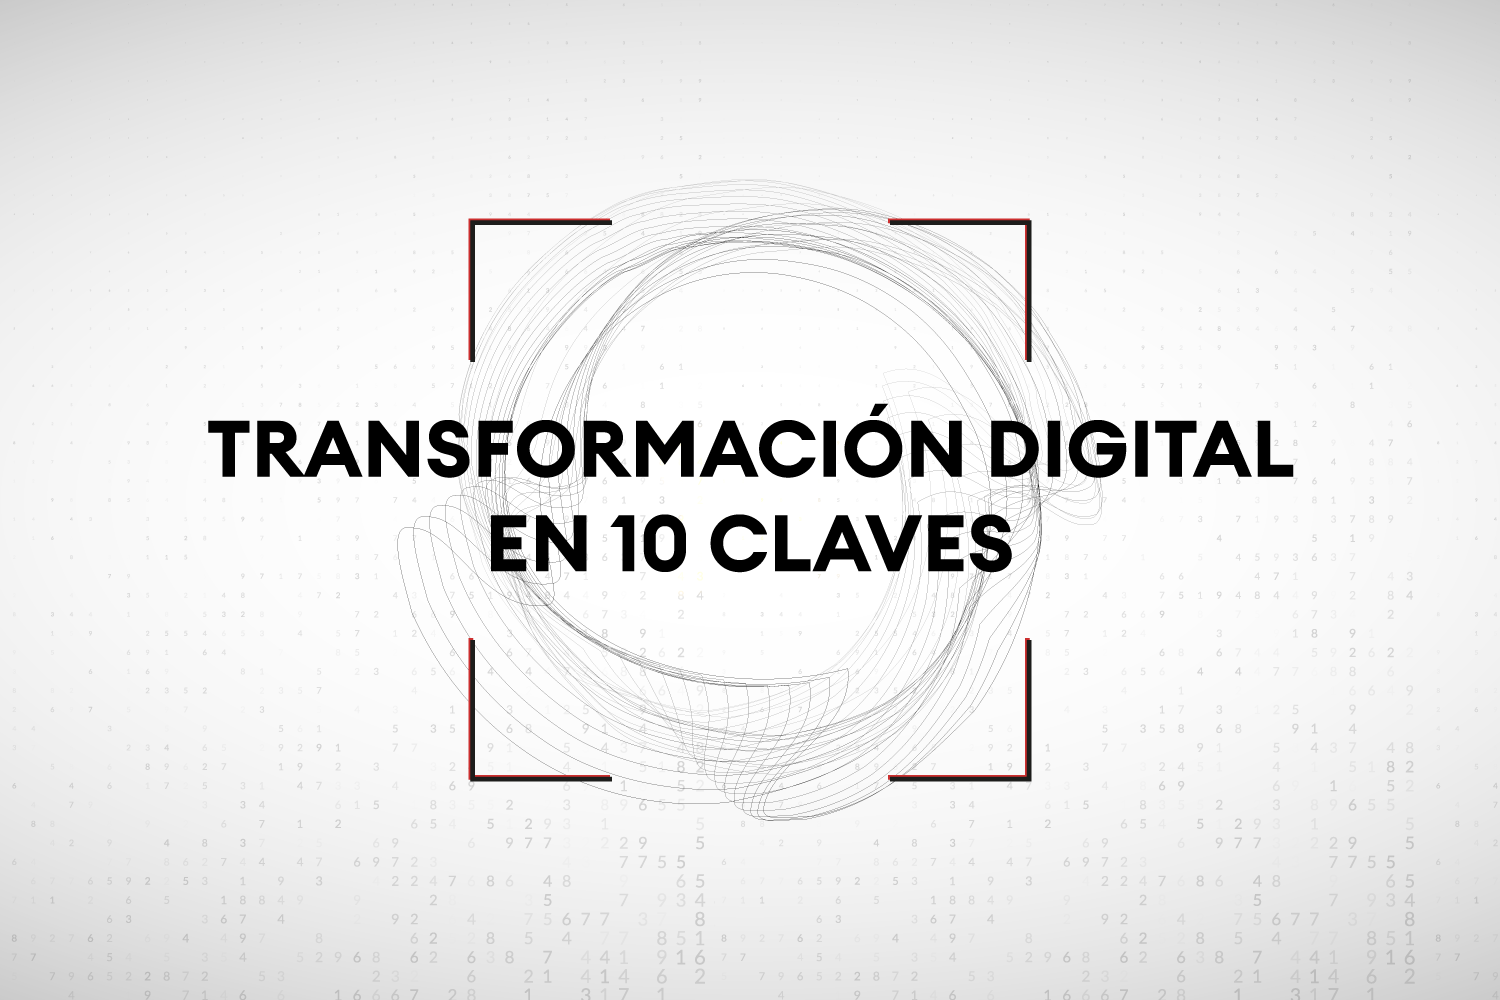 Transformación digital en 10 claves